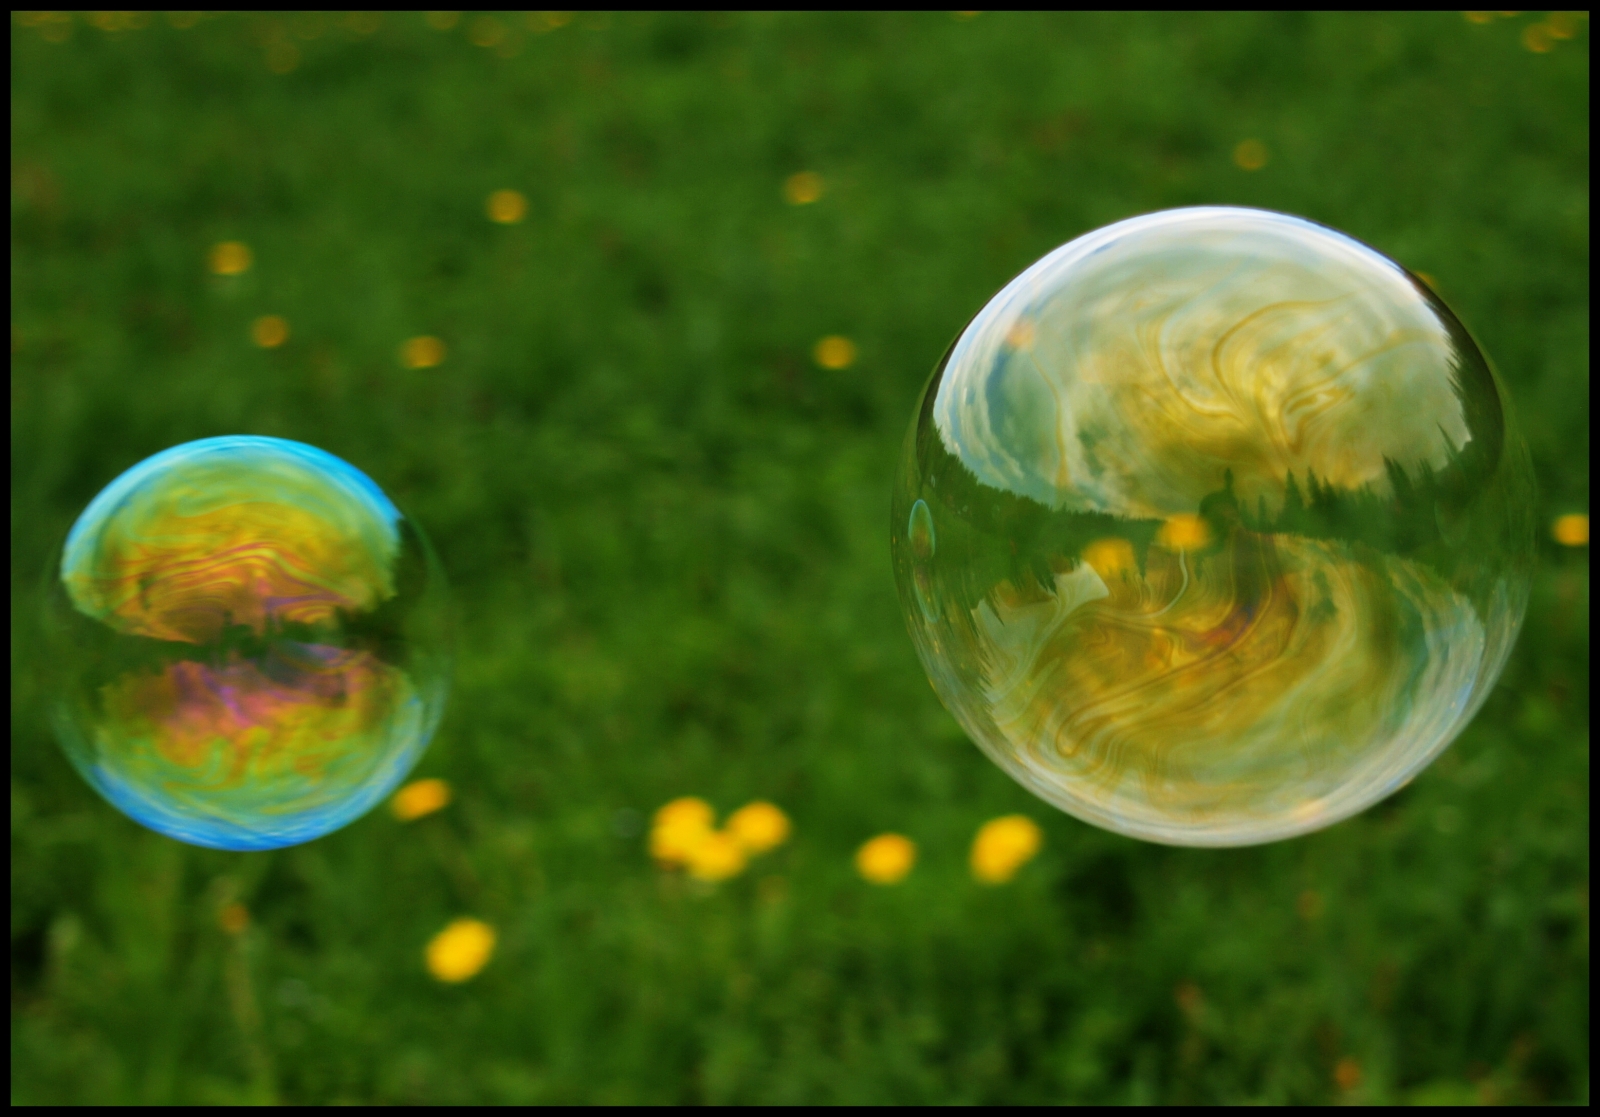 Bubliny, bubliny, bubliny!